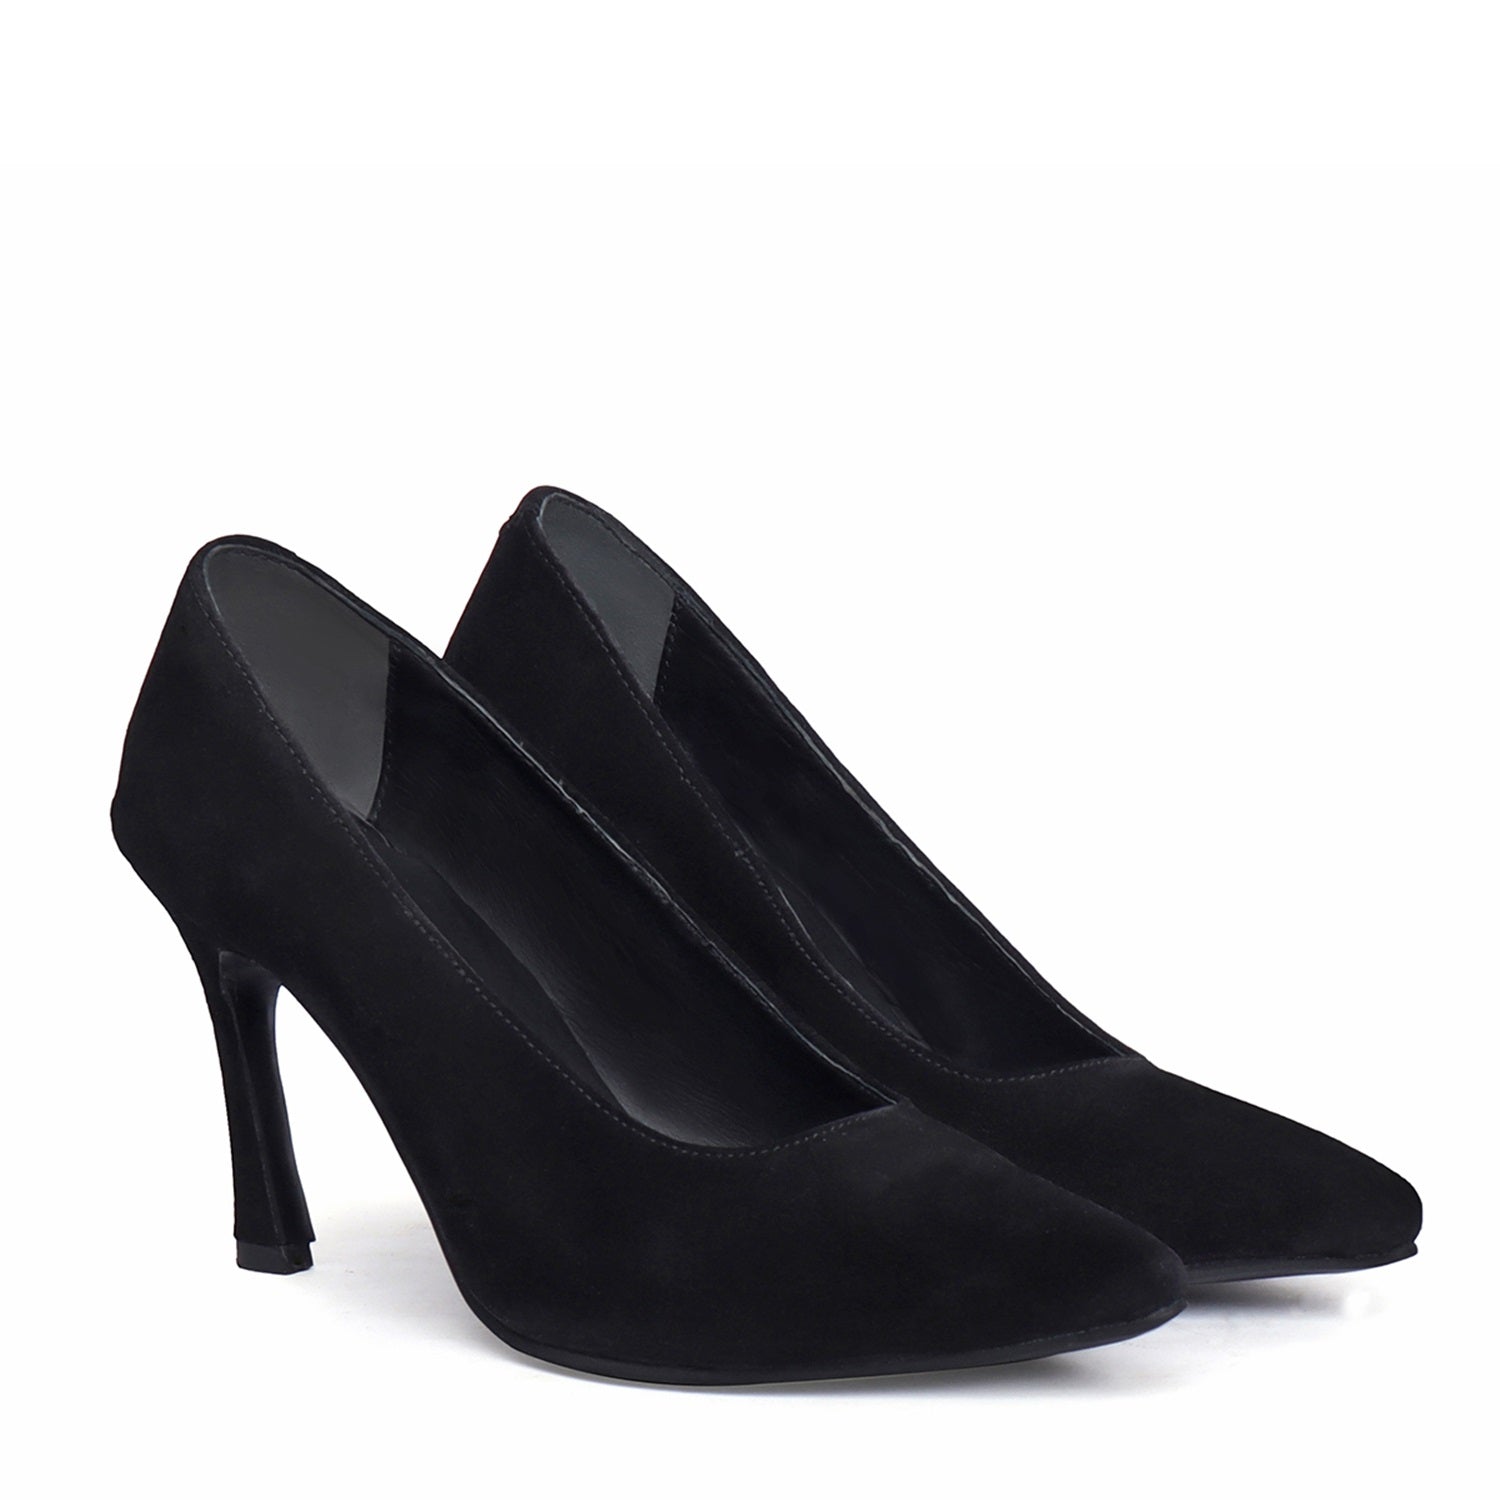 Pointed Toe Sleek Stiletto Pencil Heel Ladies formal Black Suede Leather Footwear By Brune & Bareskin